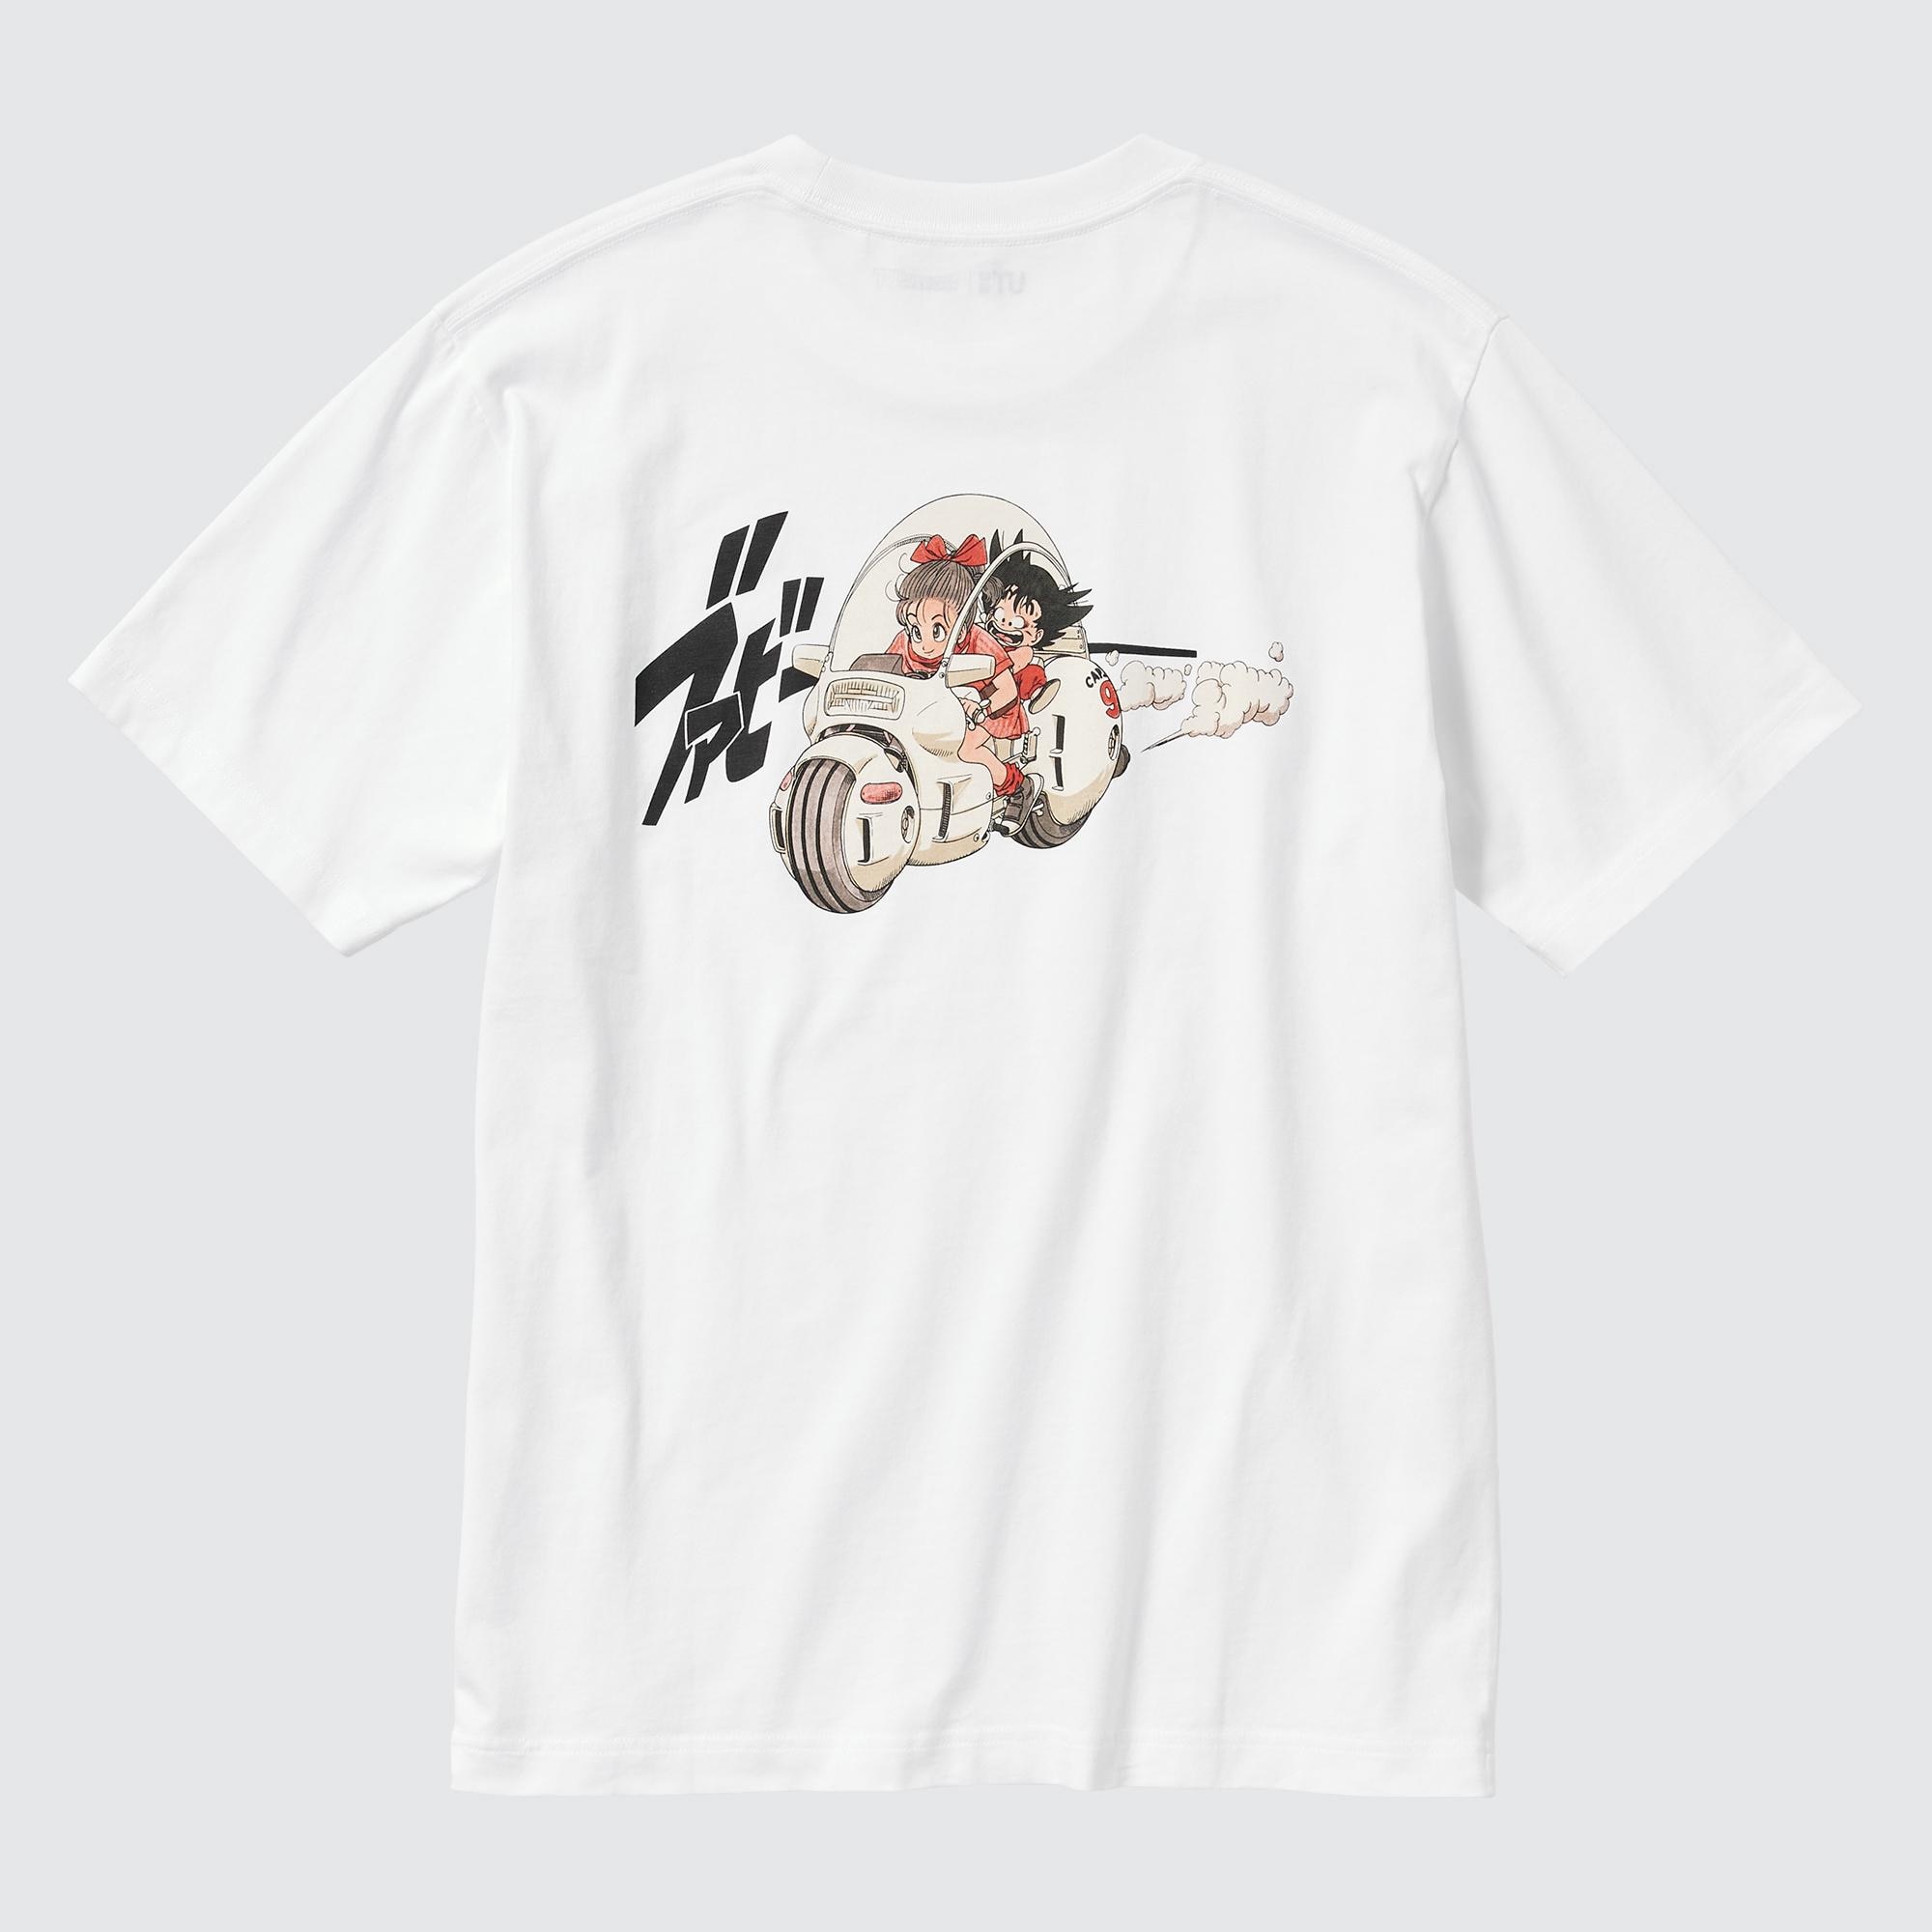 Chi tiết 60 về uniqlo anime shirts mới nhất  cdgdbentreeduvn